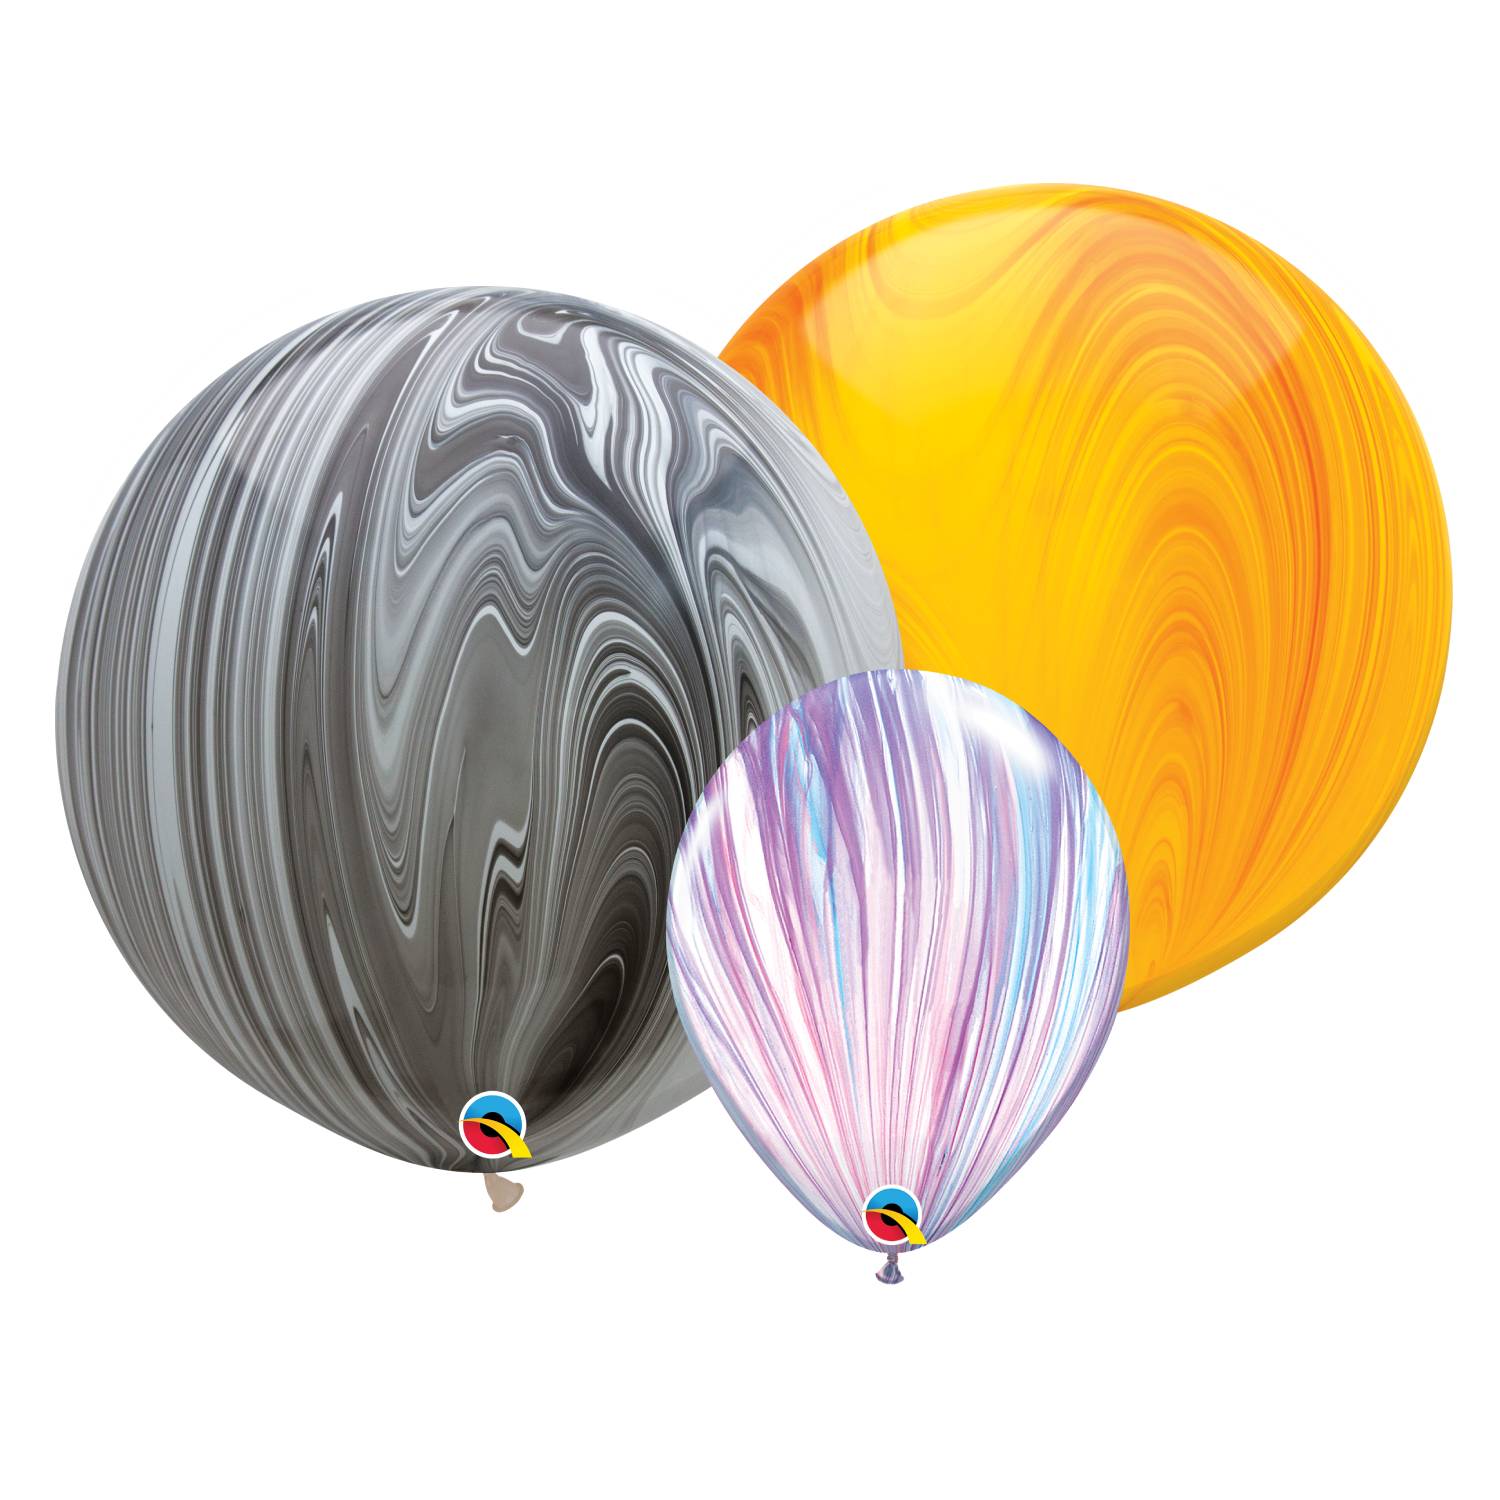 Qualatex Foil Balloon 049526 30 Rainbow Confetti 18 Multicolor